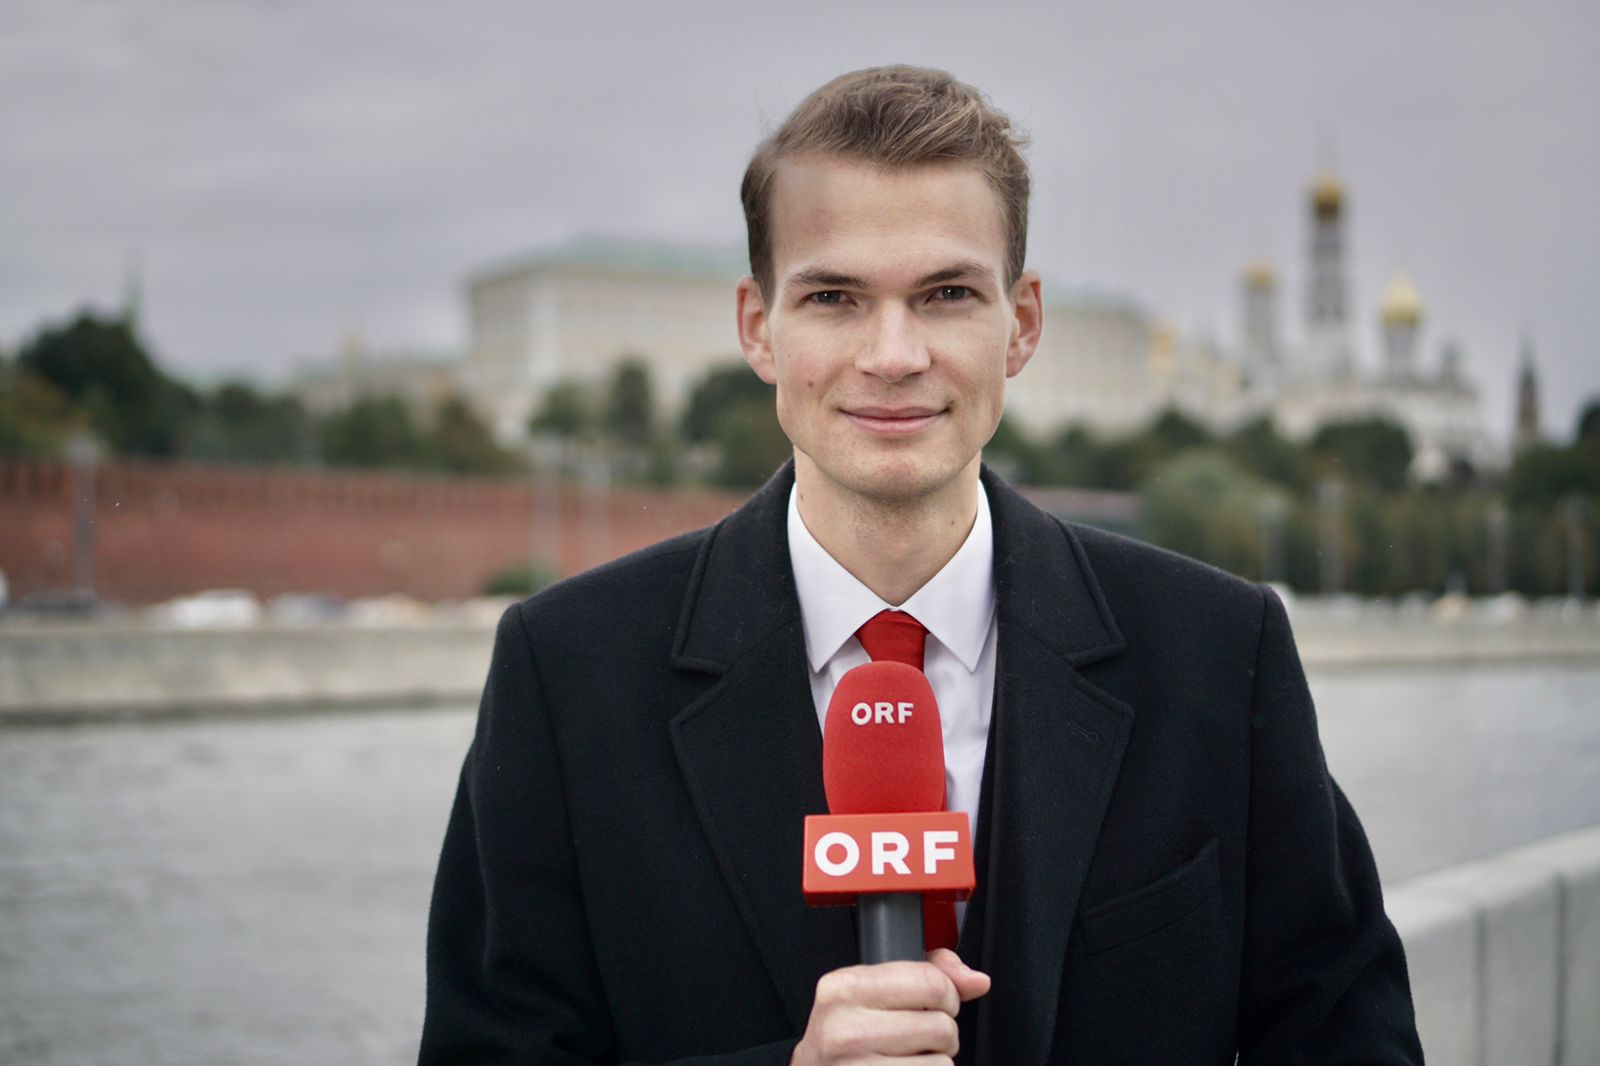 Paul Krisai ist Büroleiter des ORF-Büros in Moskau und Absolvent von "Journalismus und Public Relations (PR)". Foto: ORF